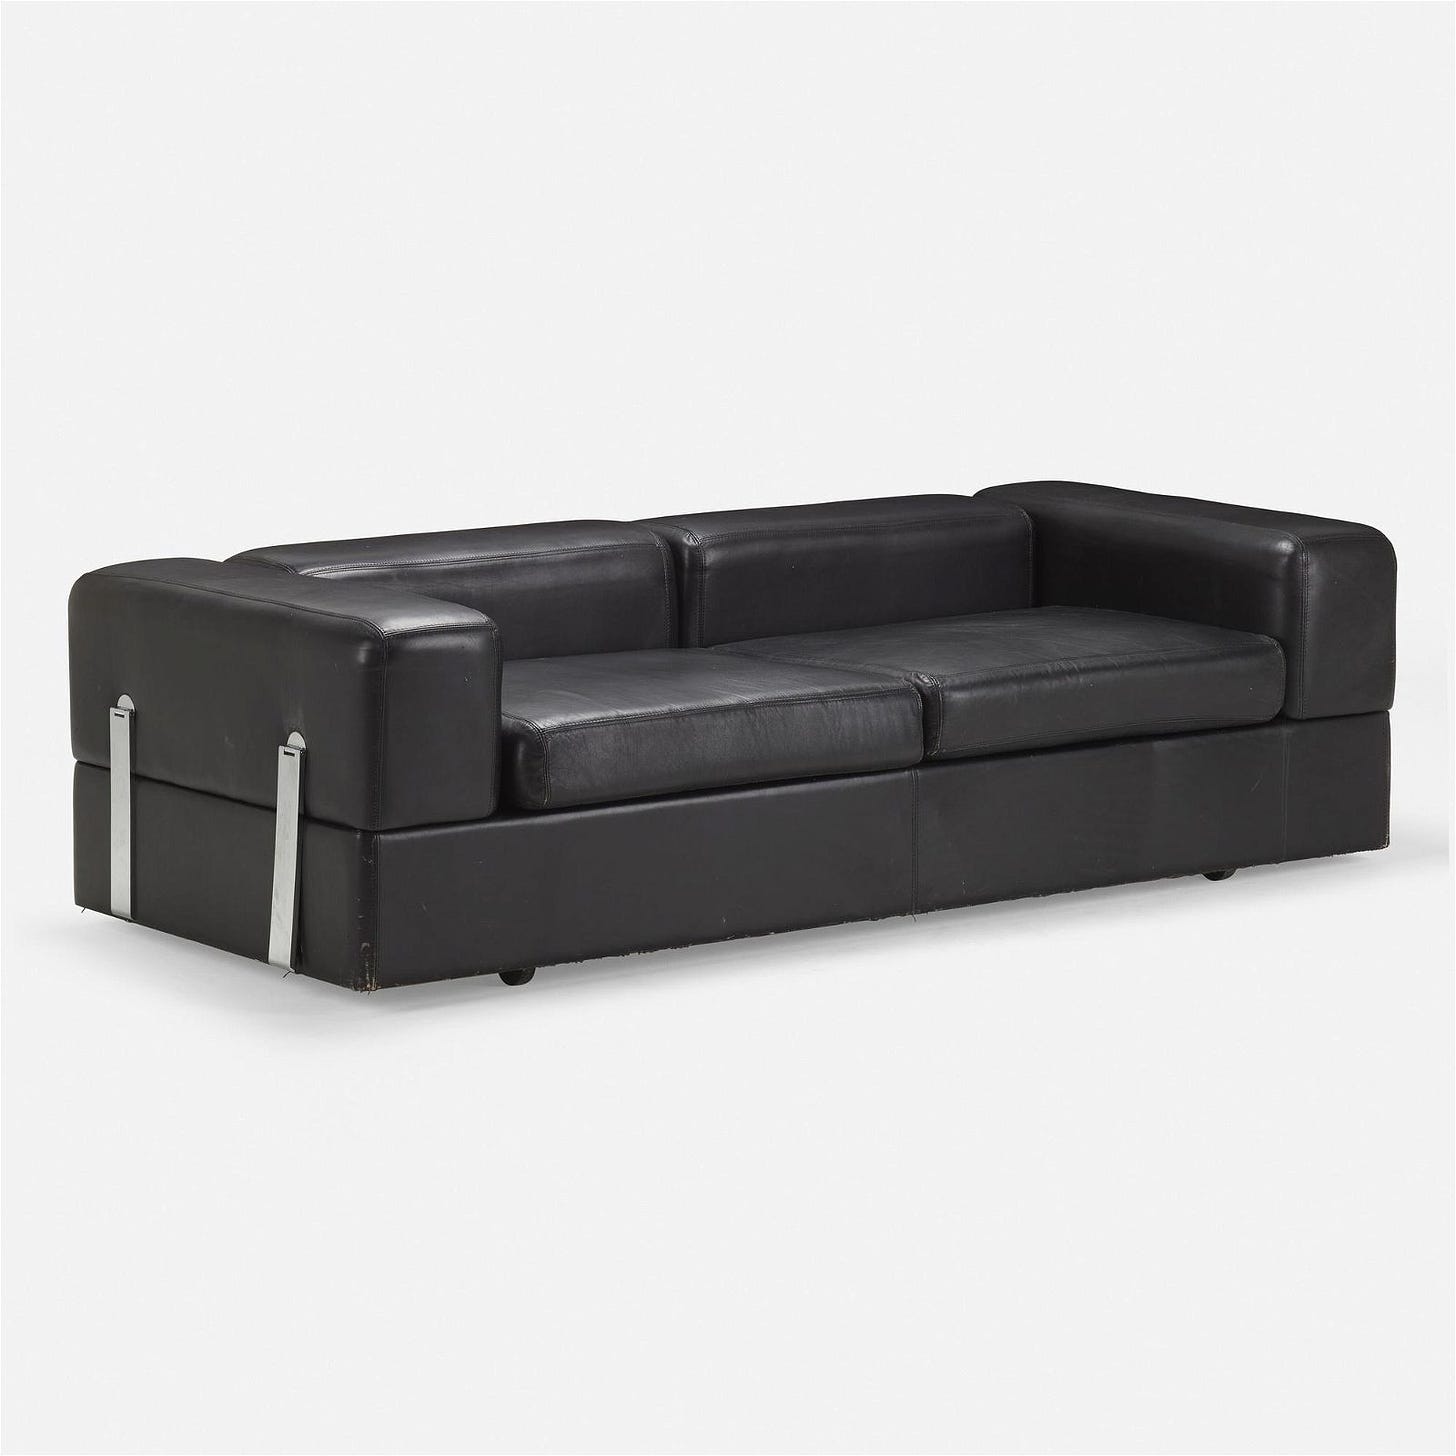 Tito Agnoli, Daybed sofa, model 711